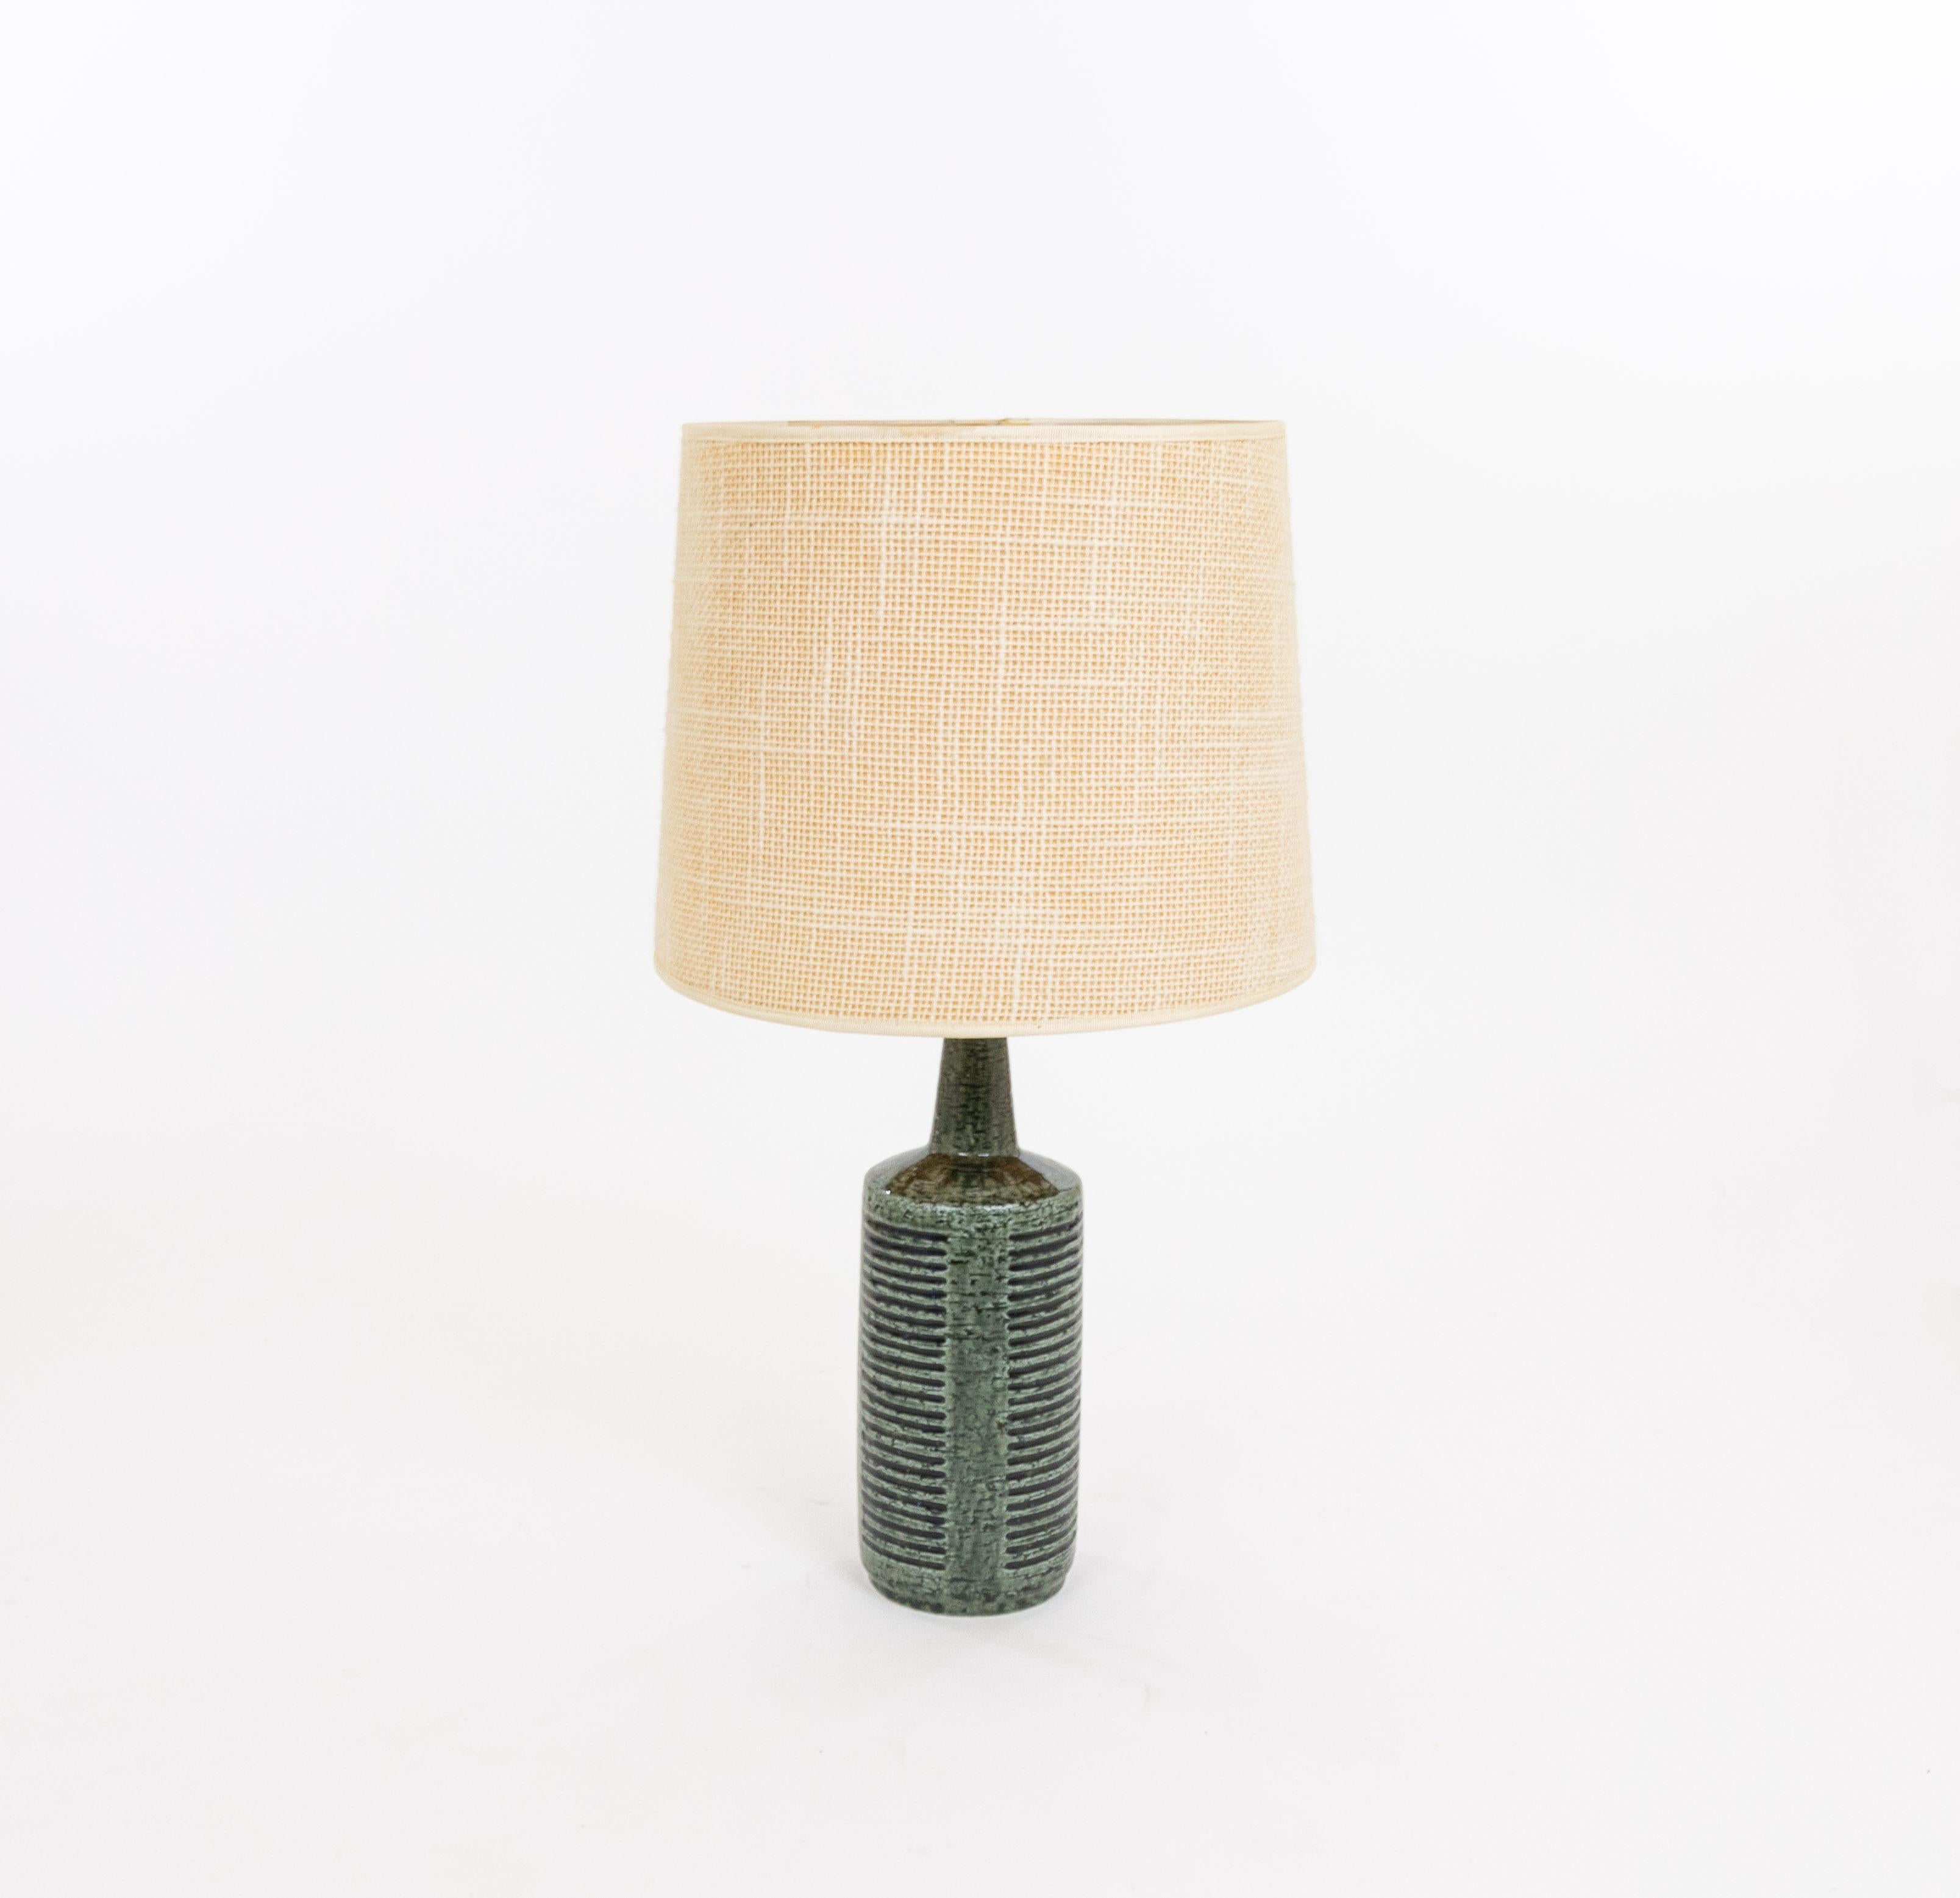 Lampe de table modèle DL/30 réalisée par Annelise et Per Linnemann-Schmidt pour Palshus dans les années 1960. La couleur de la base décorée à la main est verte et anthracite. Il présente des motifs géométriques impressionnés.

La lampe est livrée